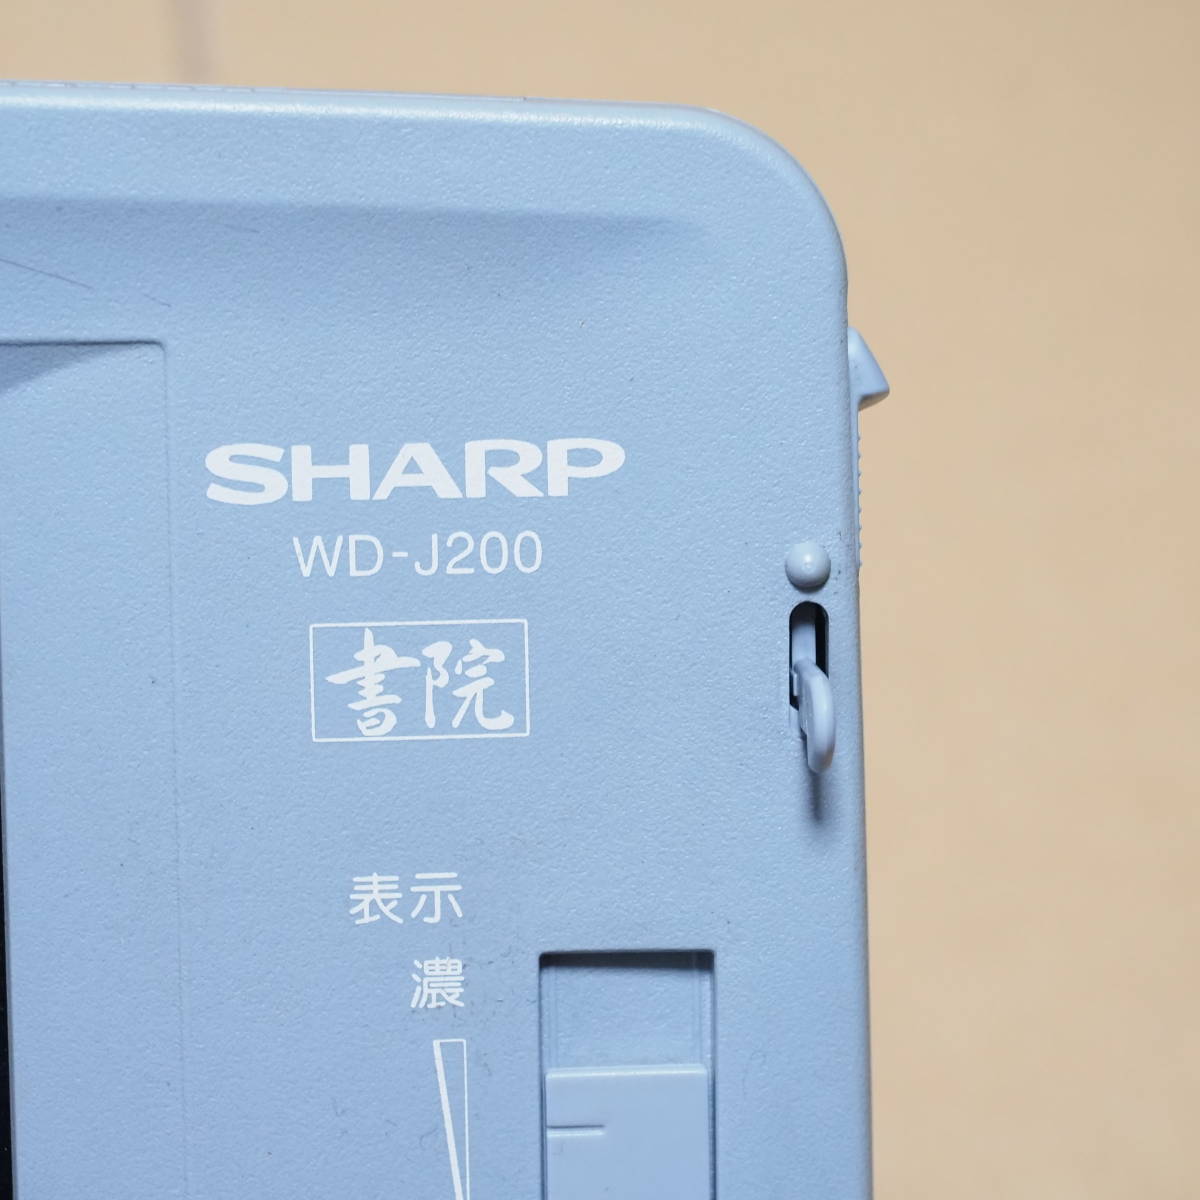 大特価!! SHARP ワープロ 書院 WD-J200